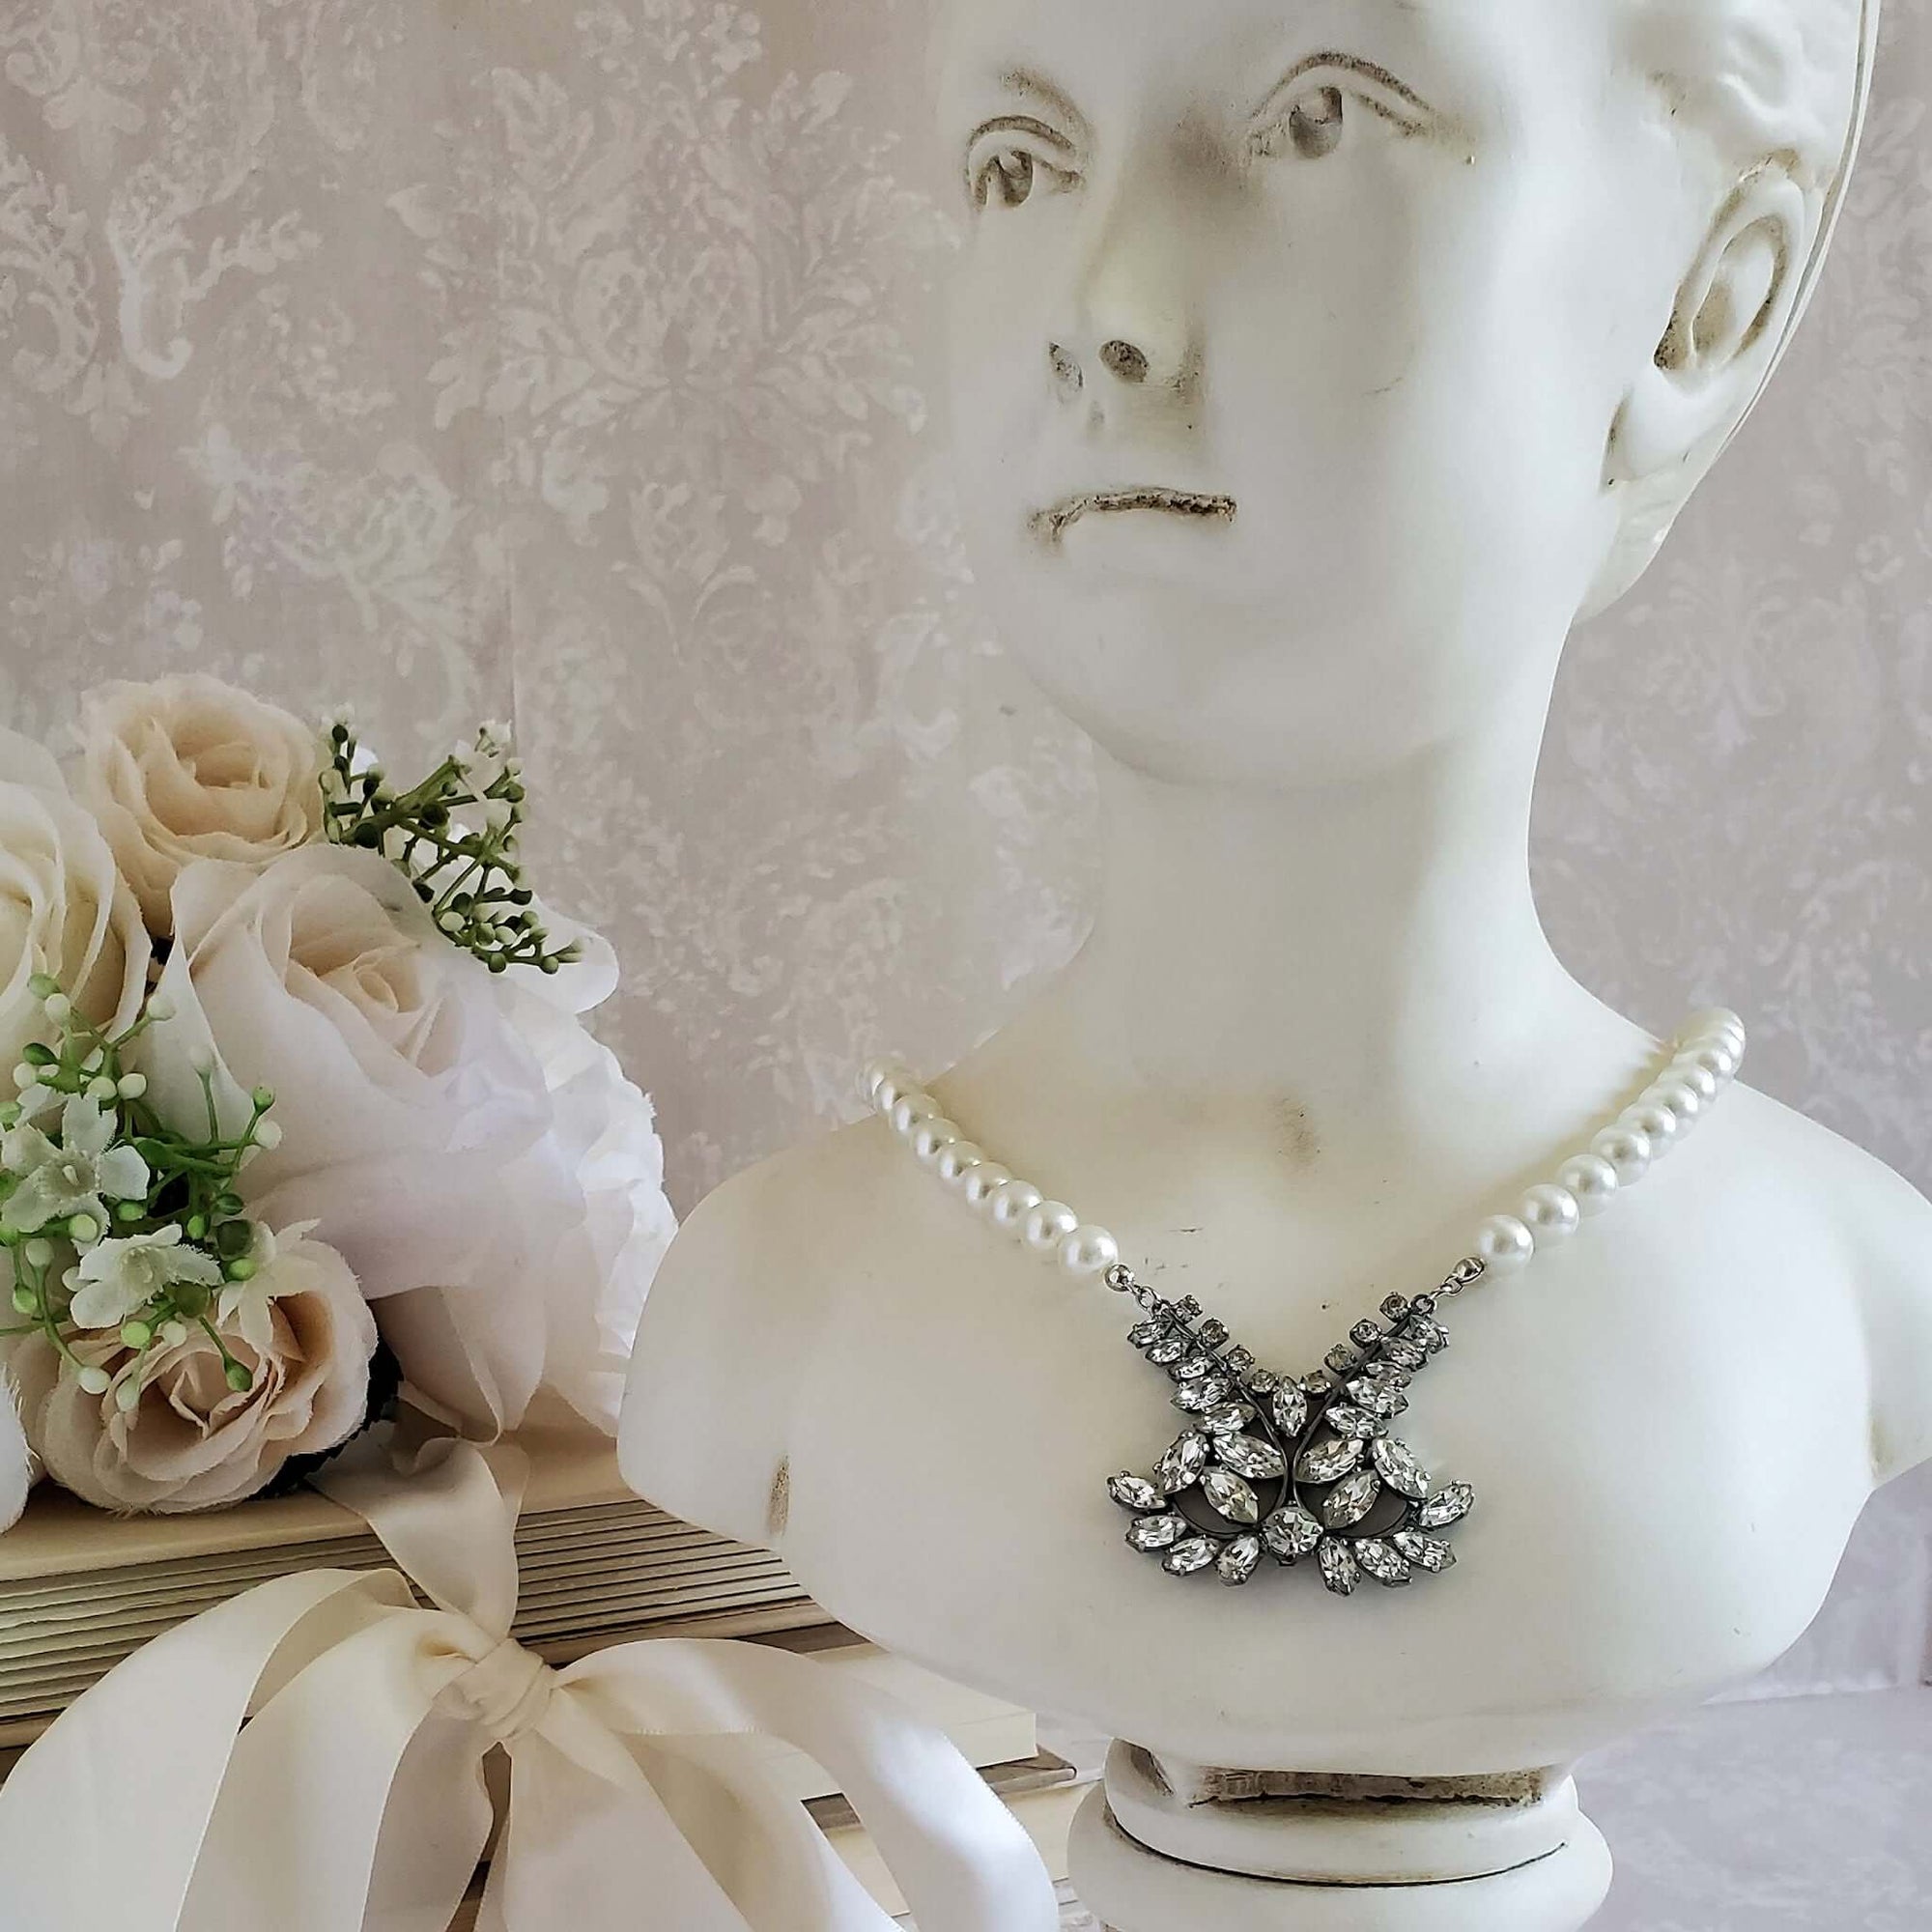 Retro Wedding Pearl Necklace